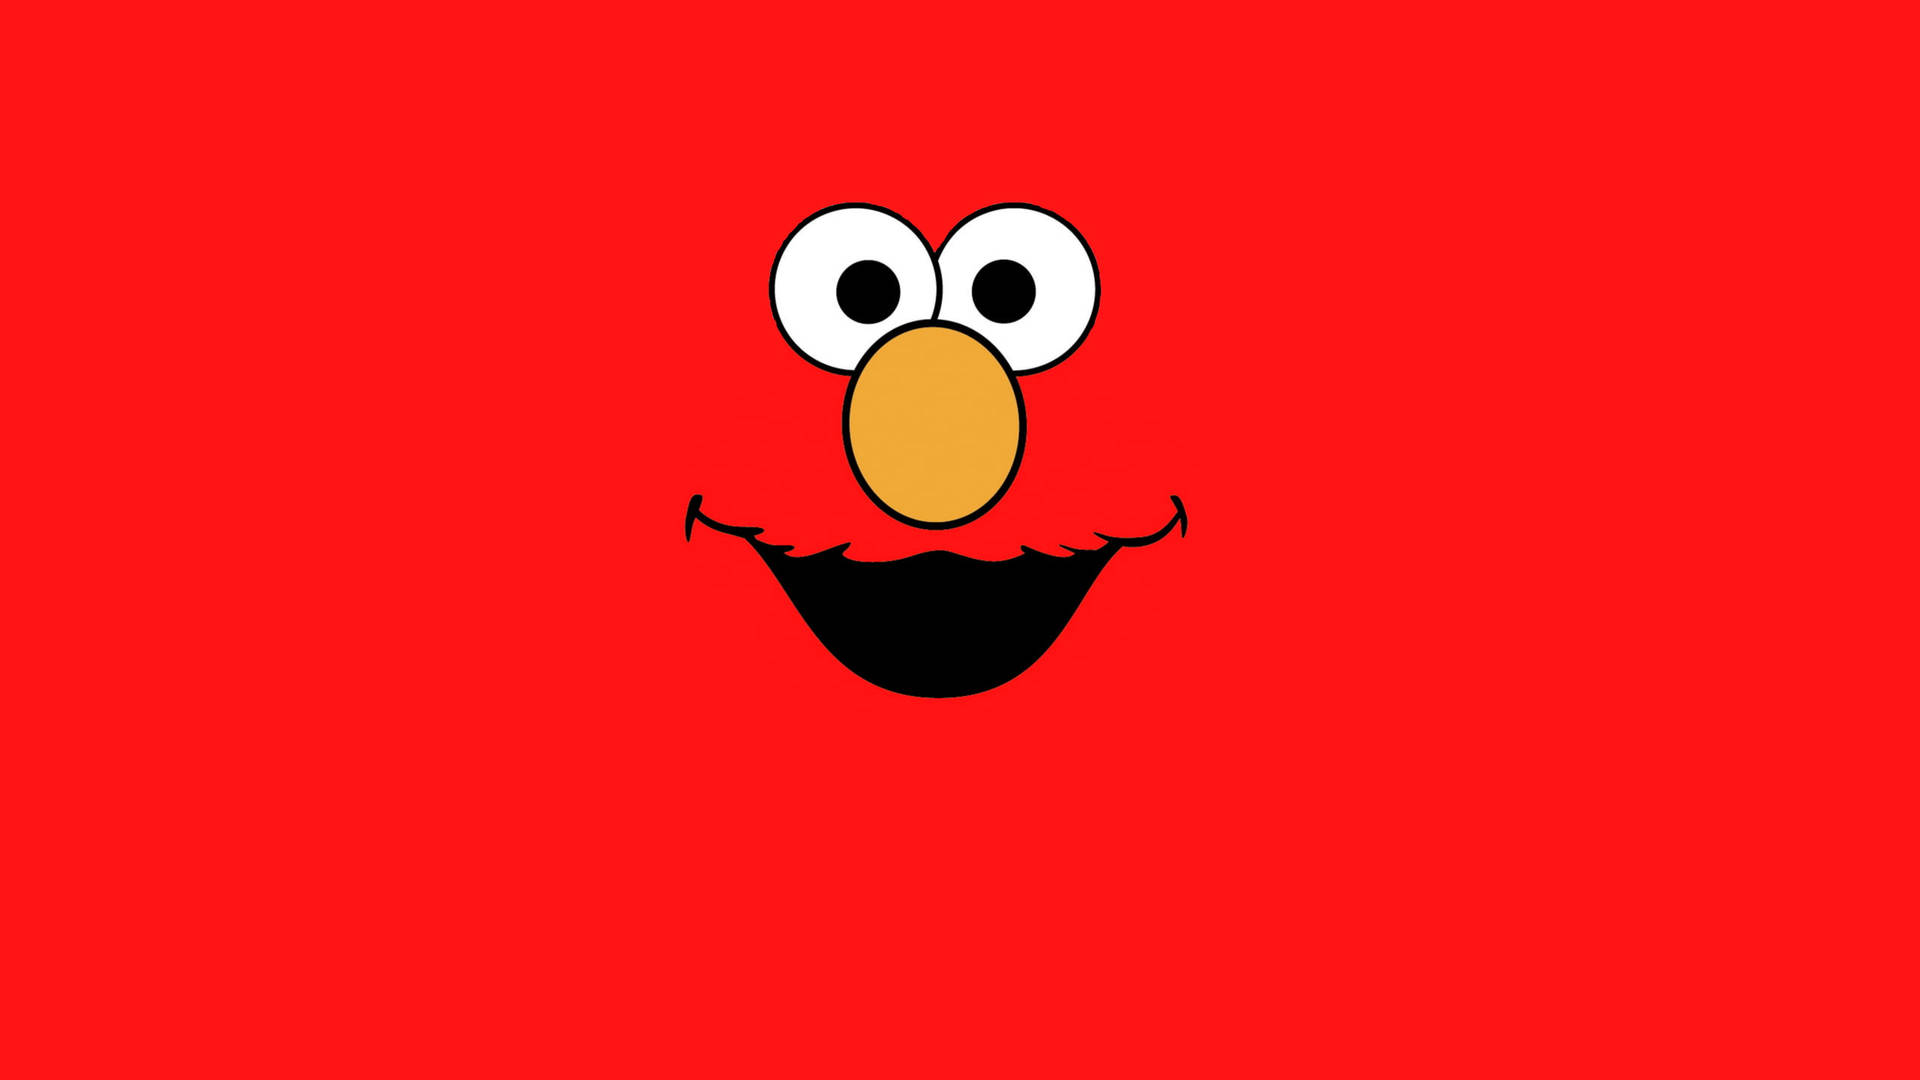 Cartoon Elmo Smiling Face Background